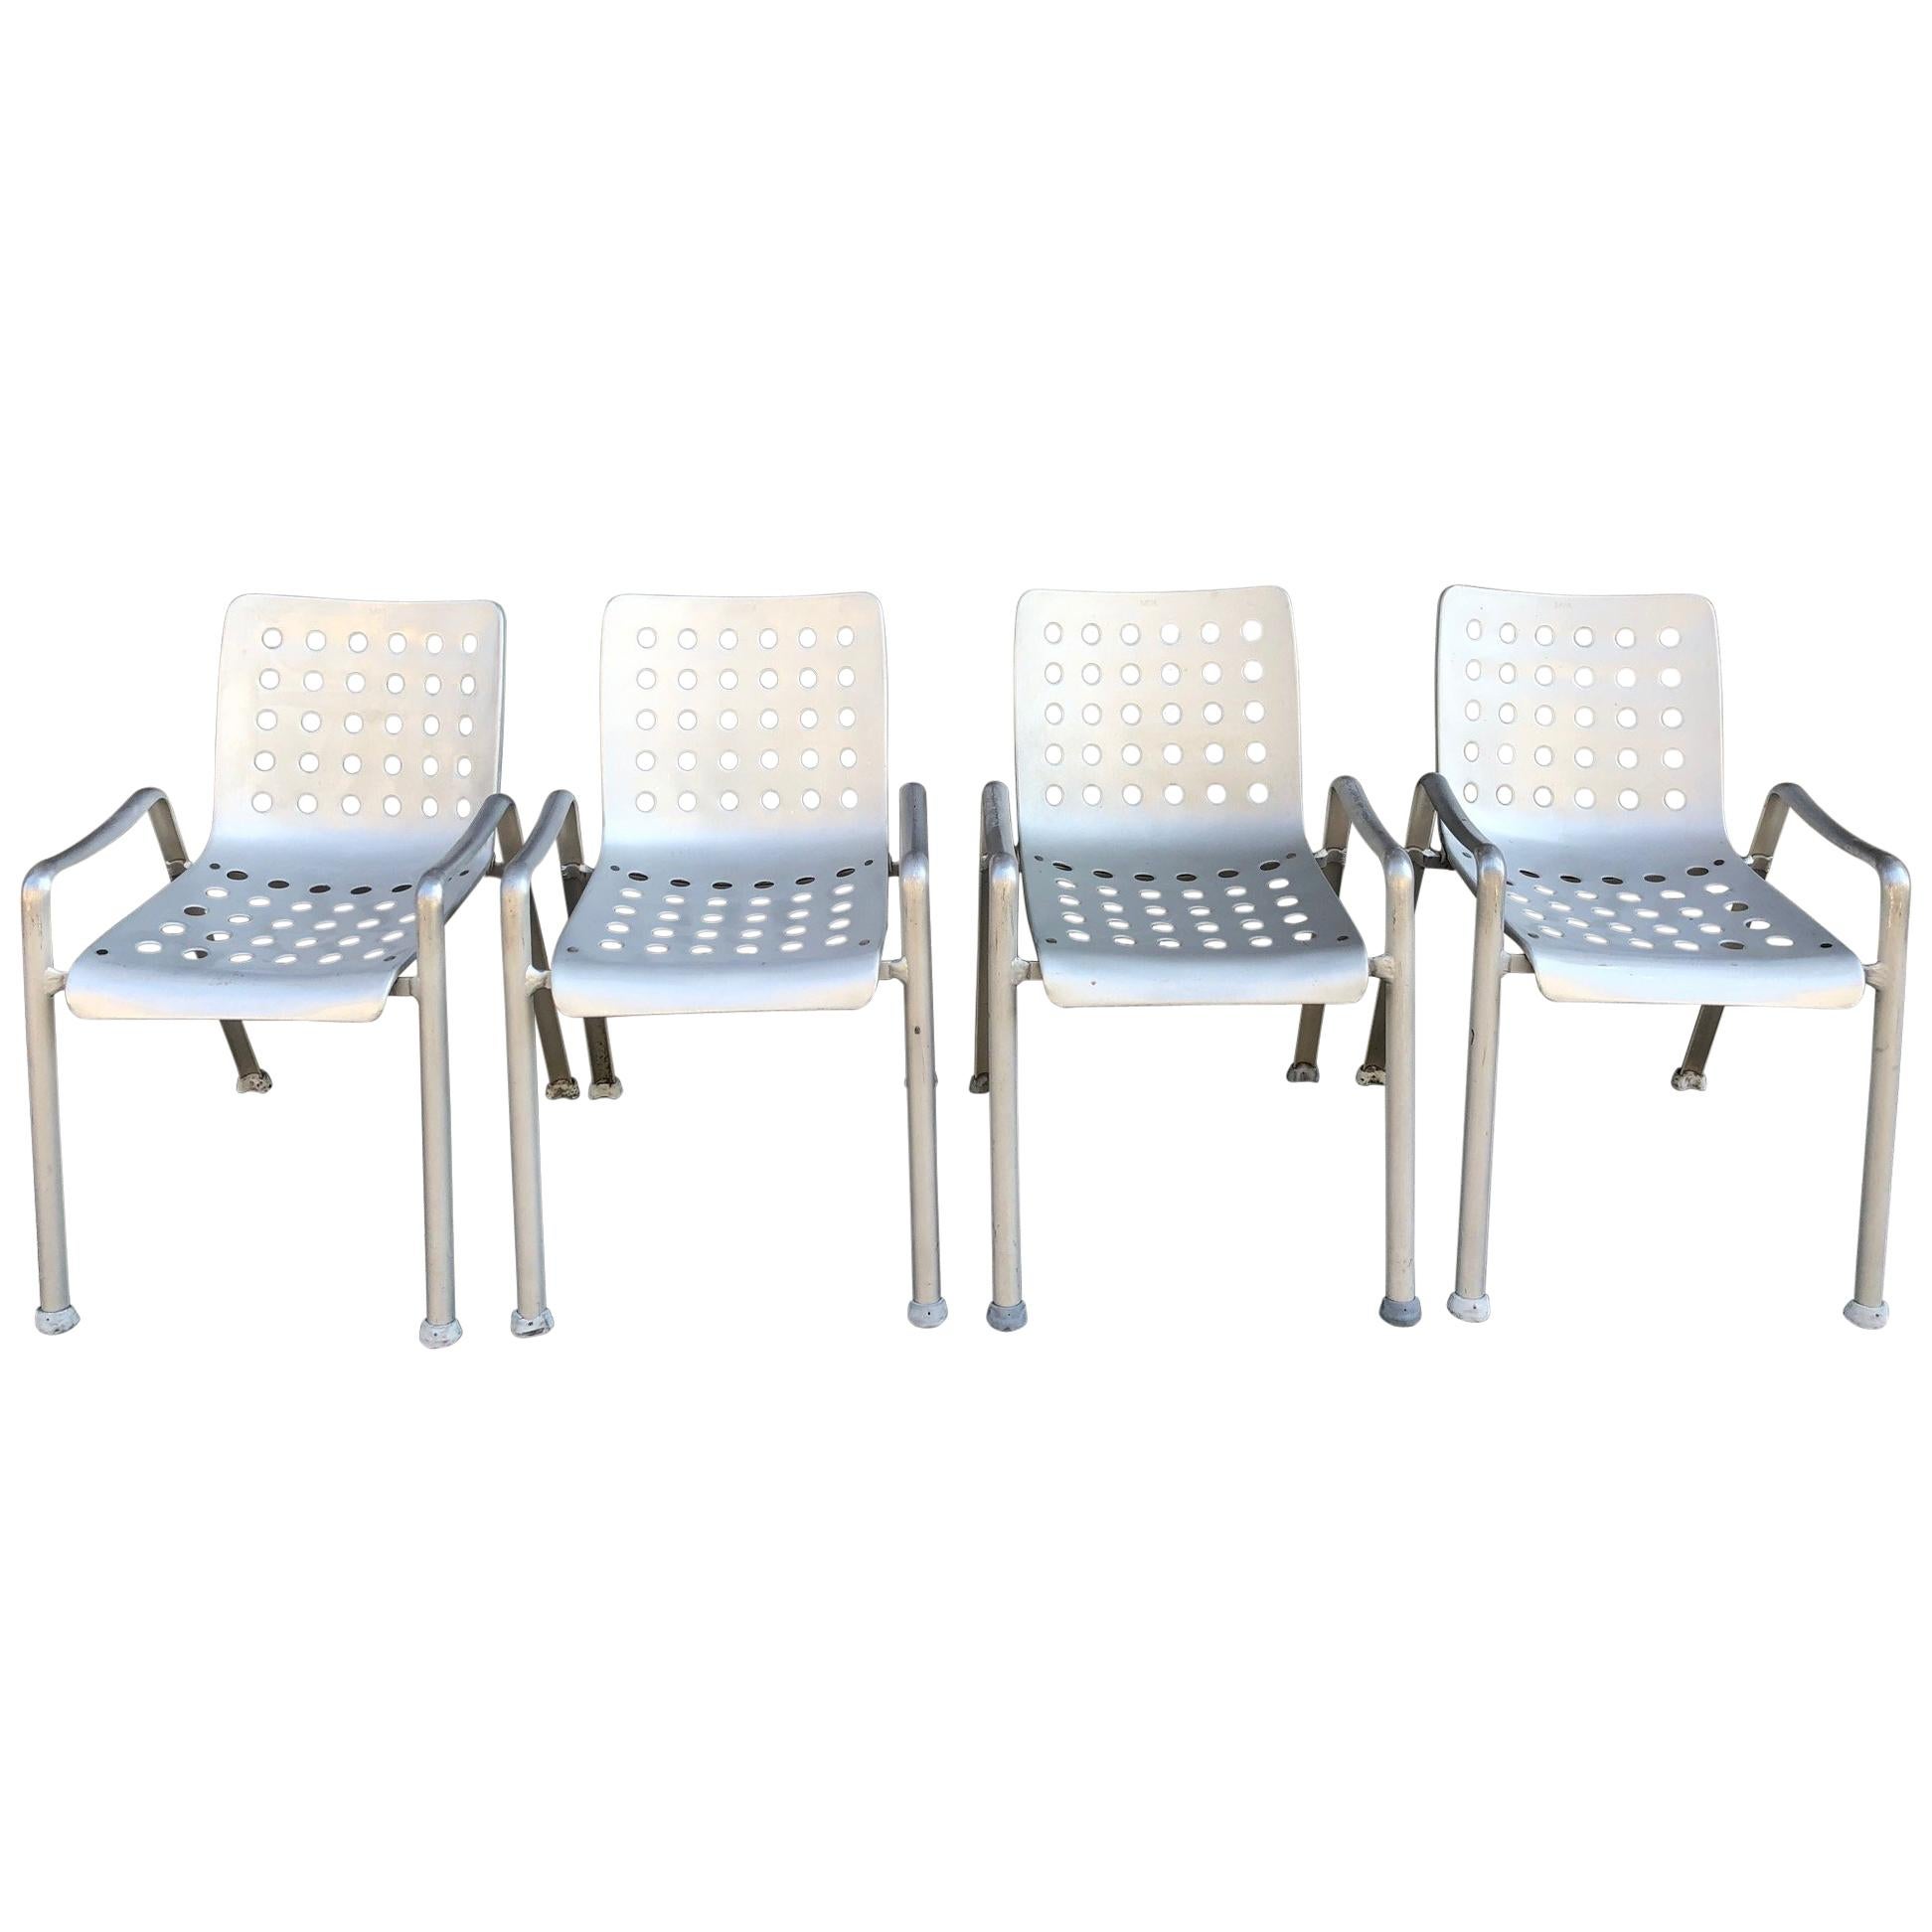 4 Hans Coray "Landi" Chairs Made by MEWA, Switzerland, 60 Holes